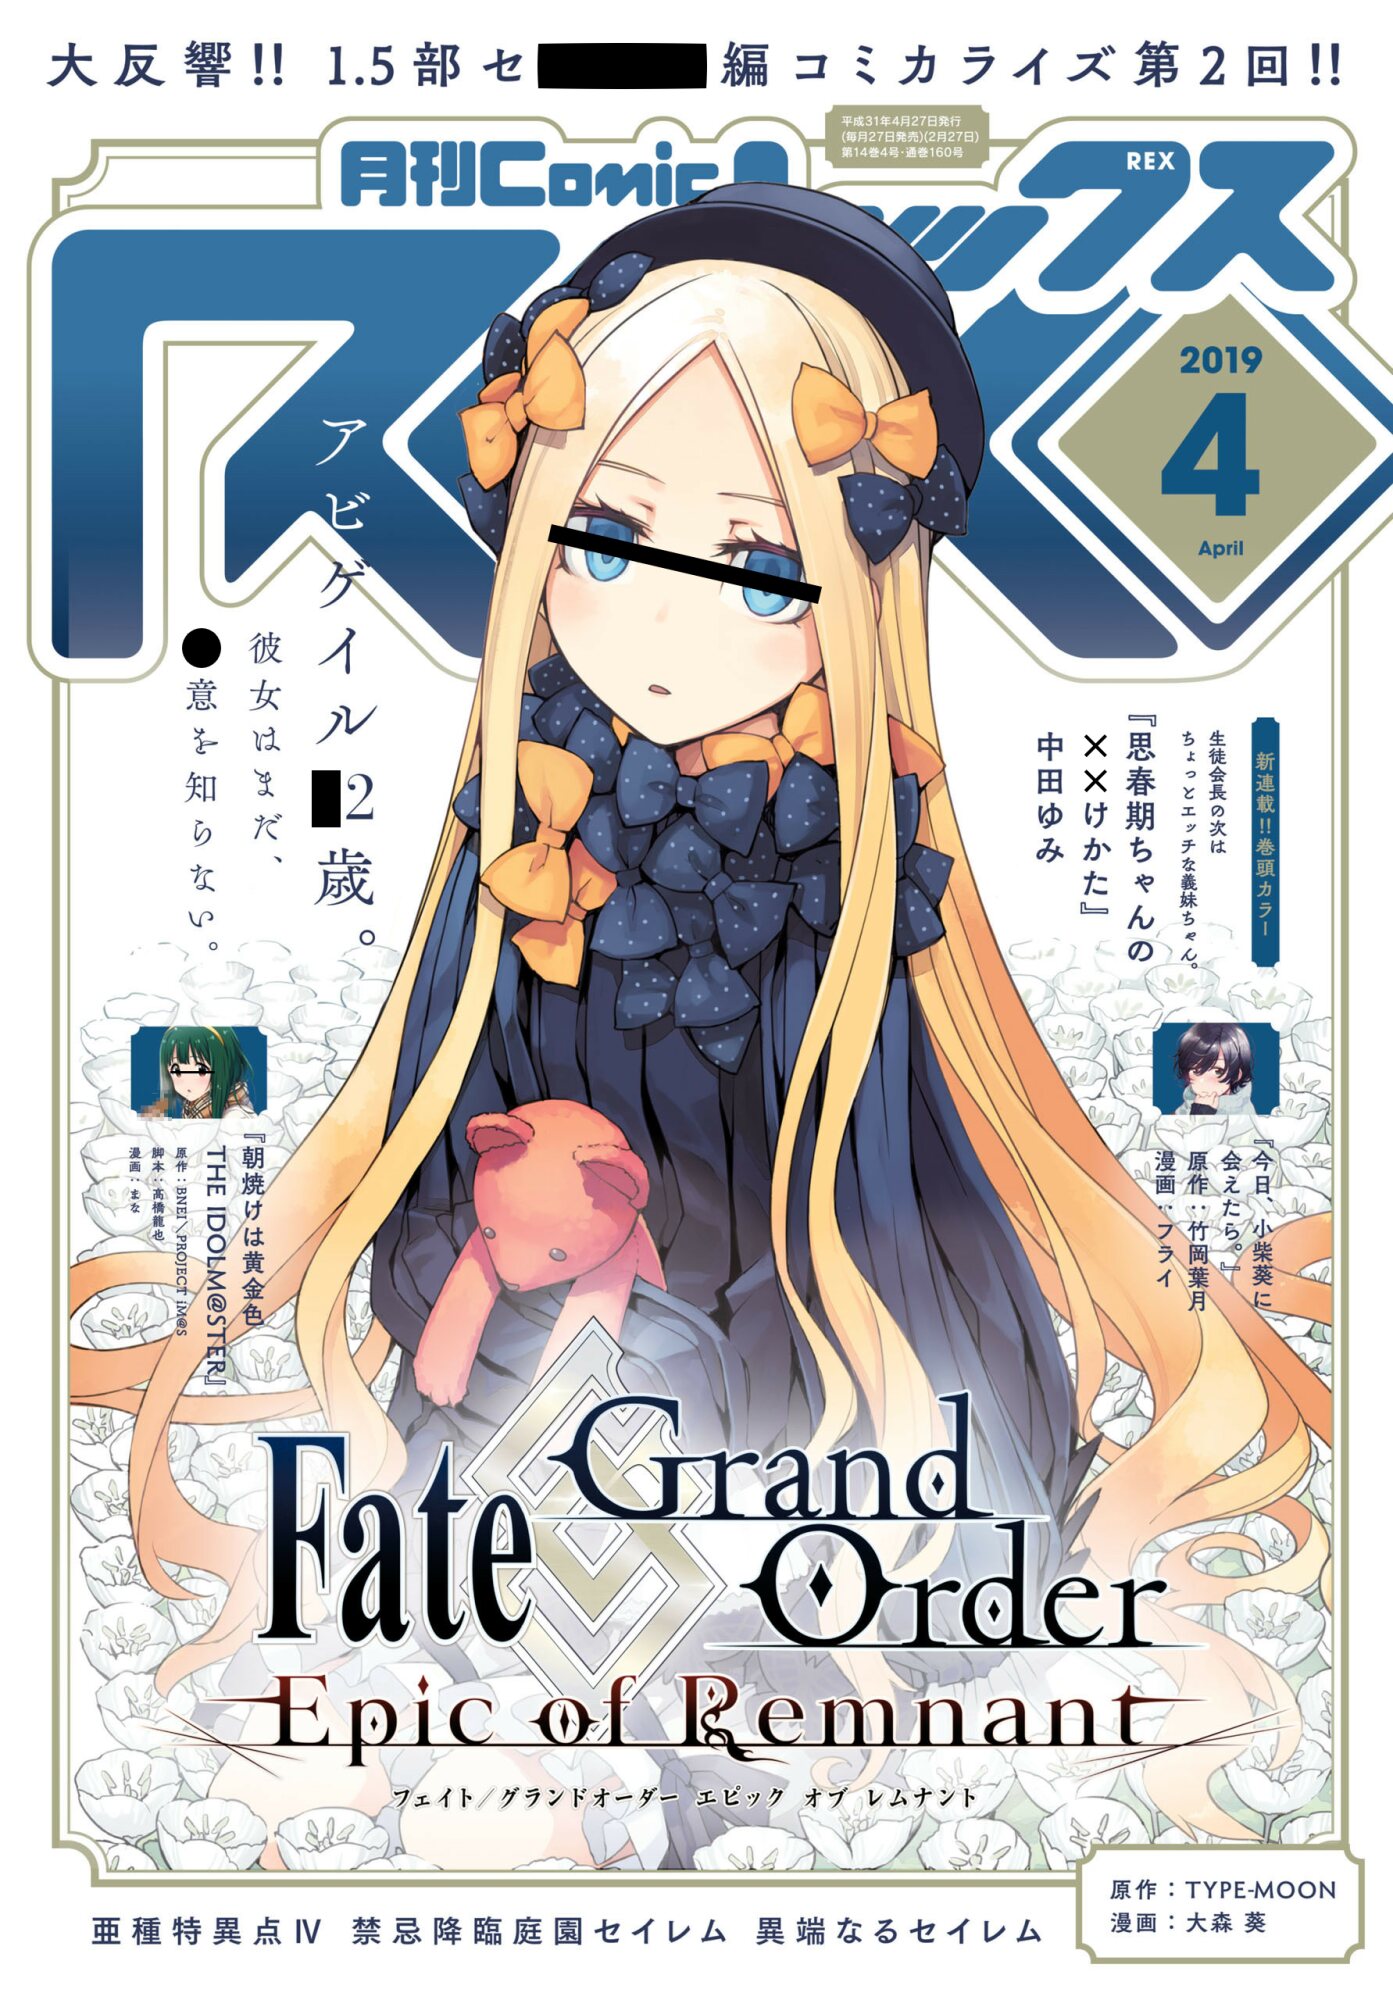 Fate Grand Order雑談スレッド1298 でもにっしょんch